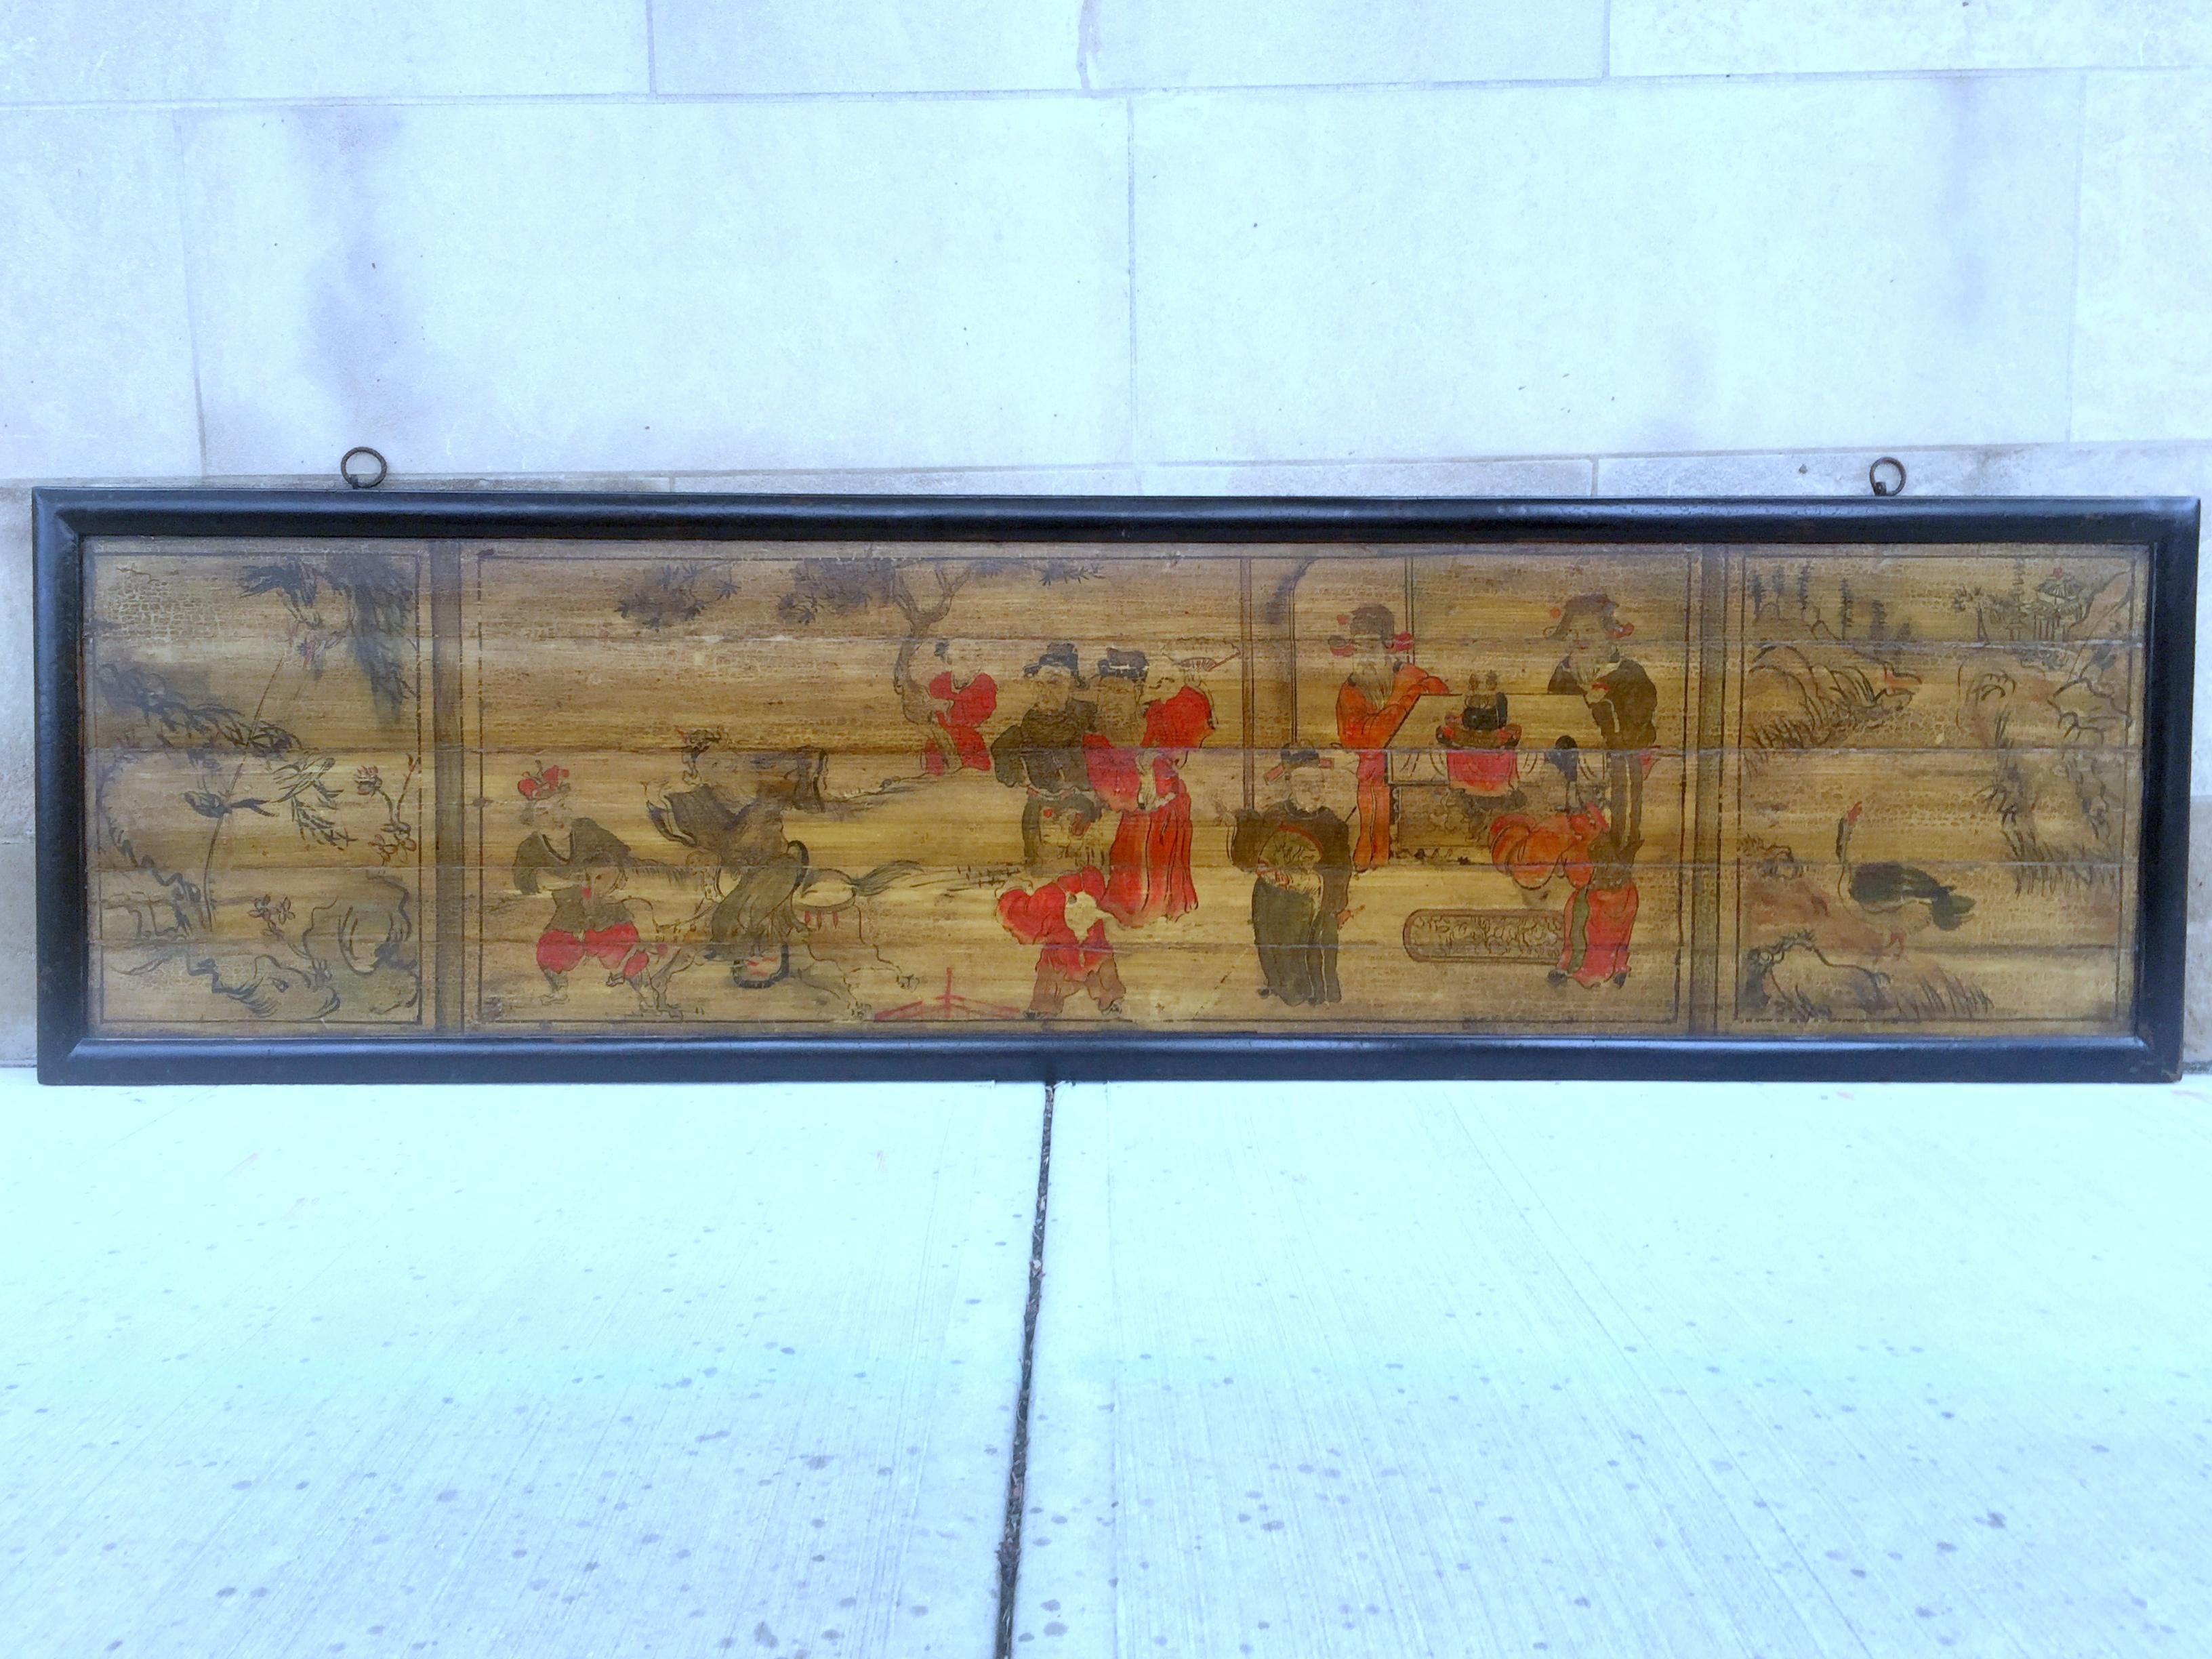 Panneau de bois asiatique peint à la main représentant des officiers impériaux, des enfants, des oiseaux et des fleurs.